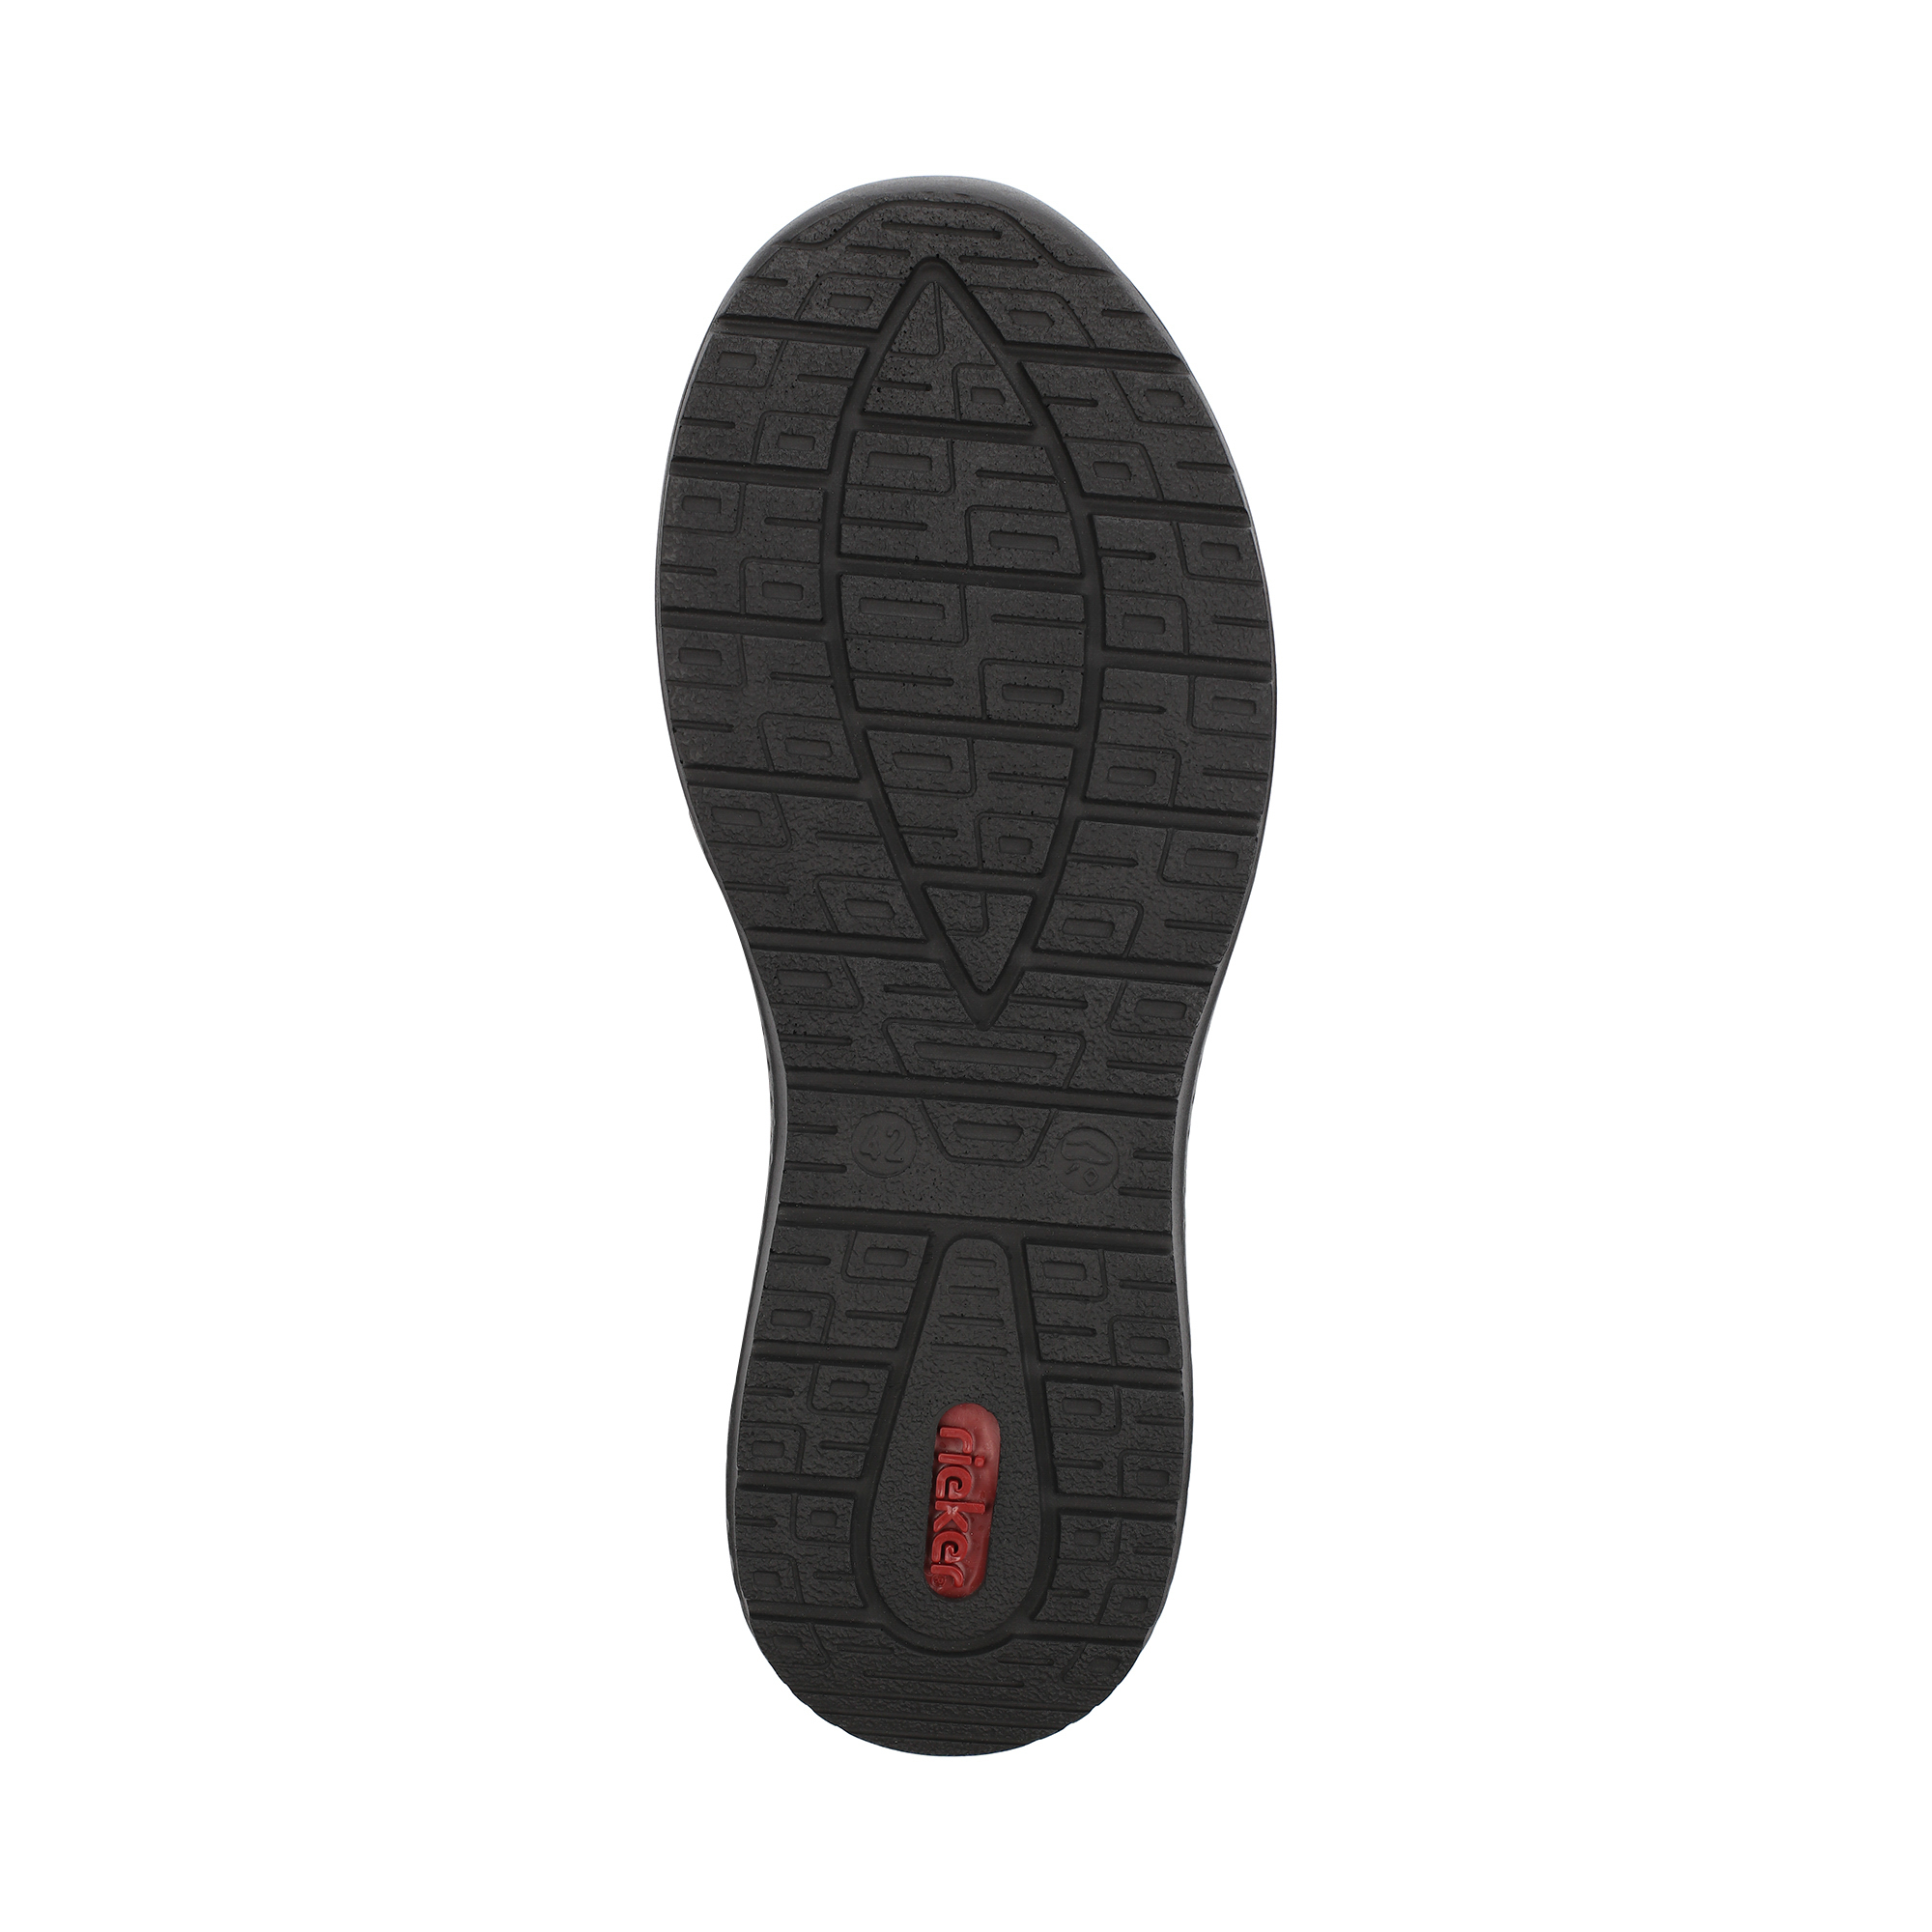 Туфли/полуботинки Rieker B7654-00, цвет черный, размер 41 - фото 4